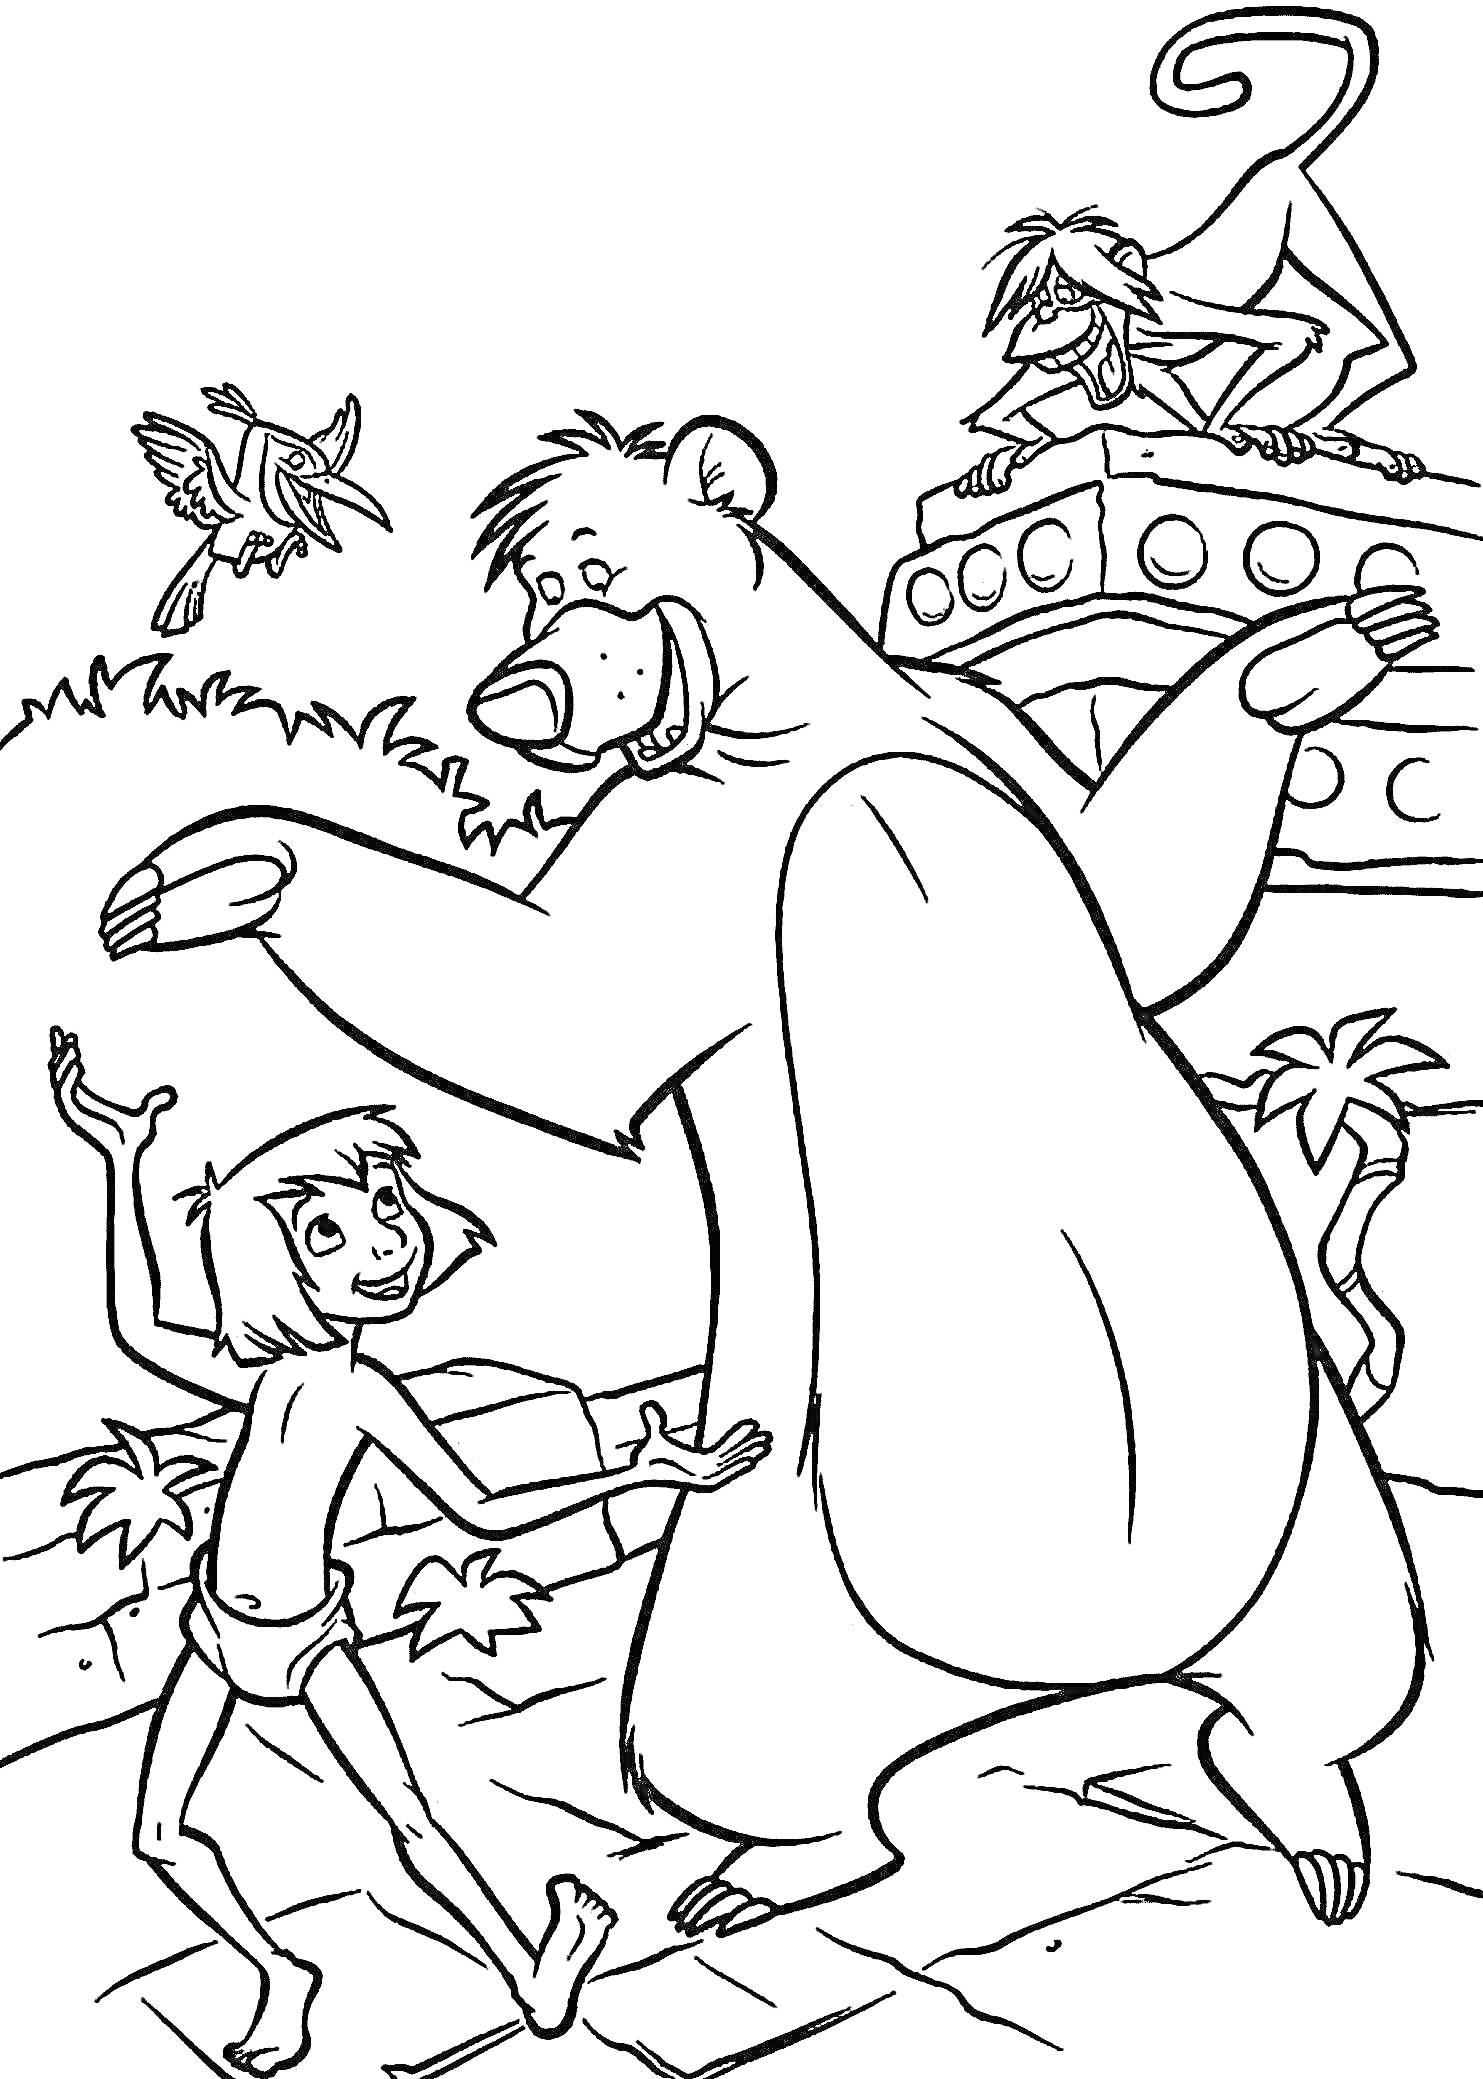 Раскраска Мальчик, медведь, обезьяна и птица в джунглях